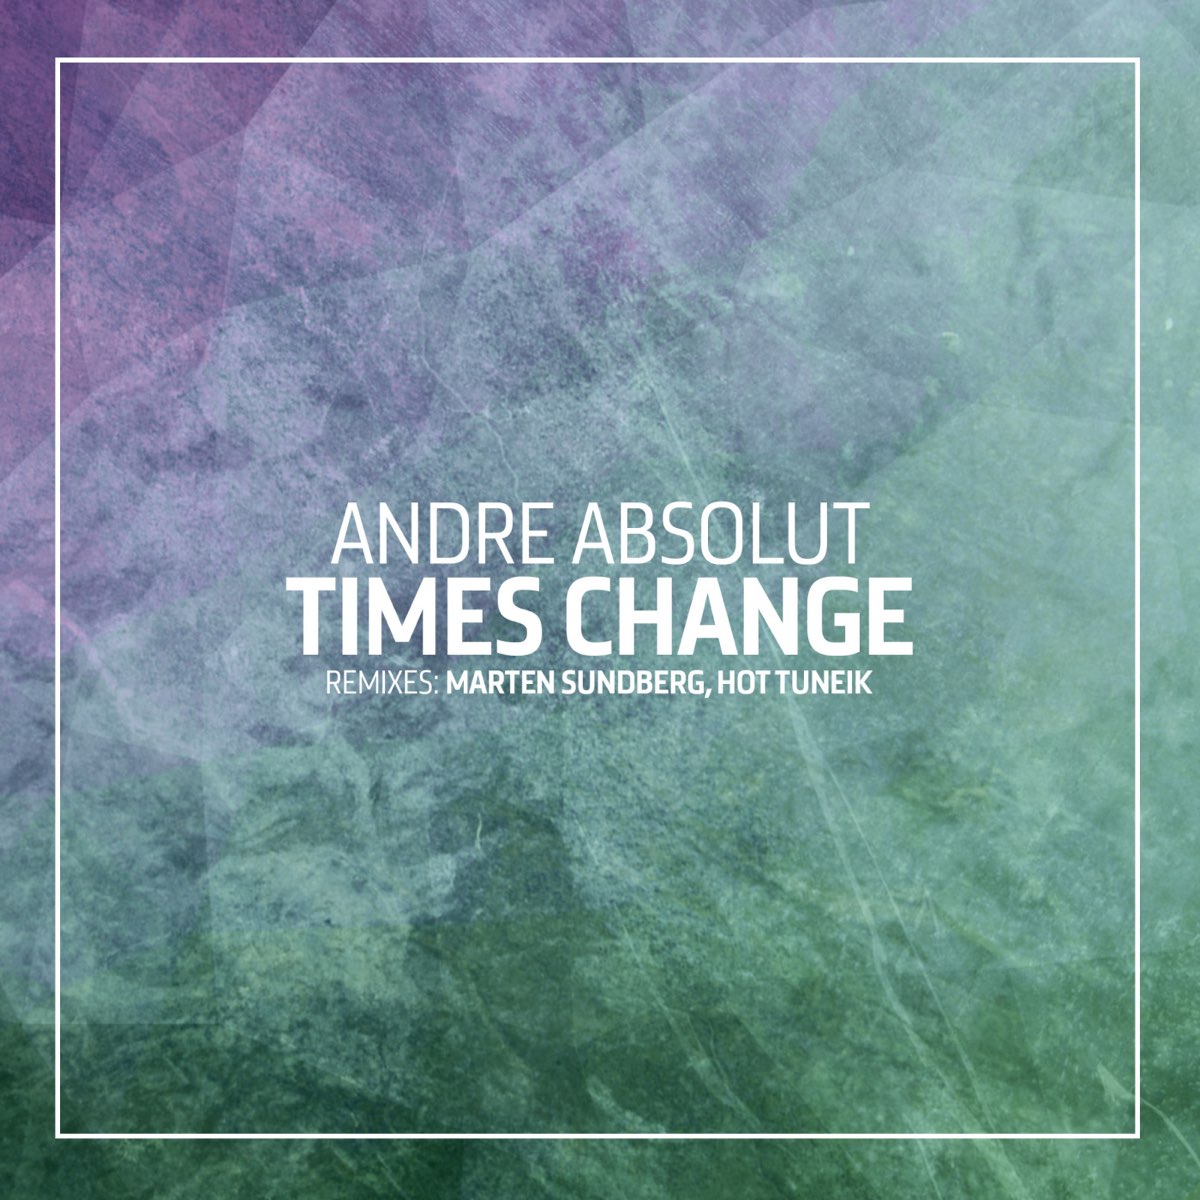 Time change. KPM - change times. KPM Music - change times. Changes (Remix). Absolute time